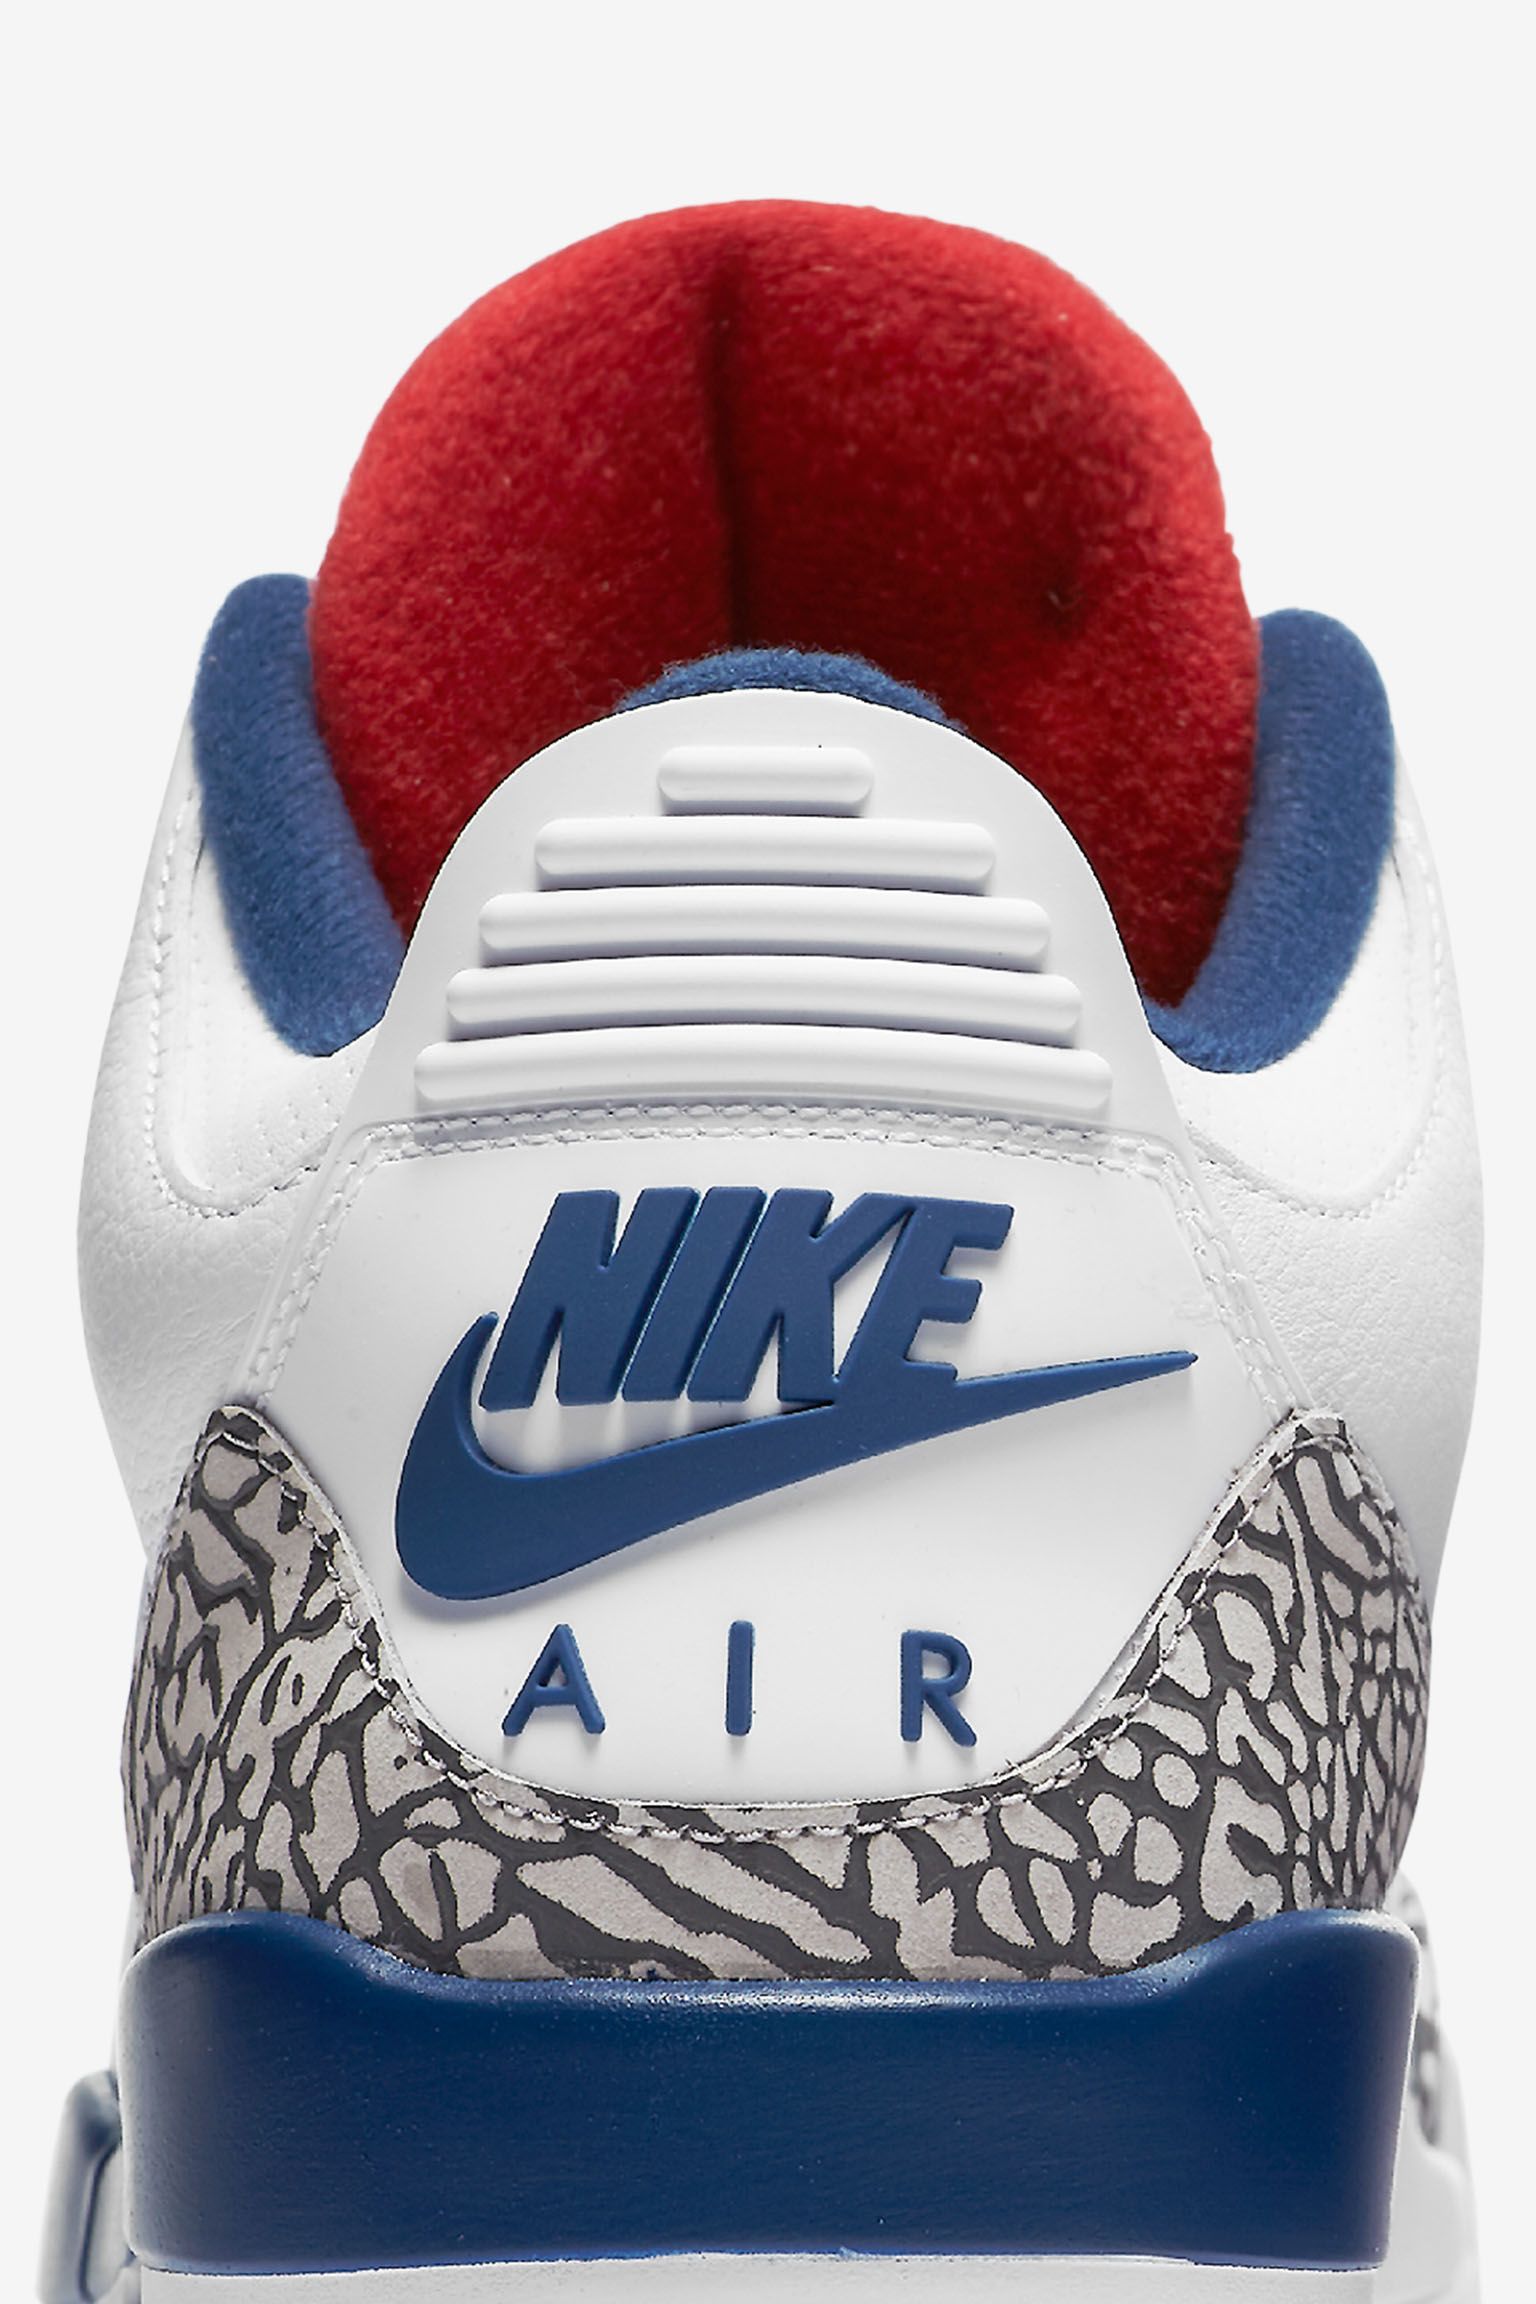 الصائغ Air Jordan 3 Retro OG 'White & Cement Grey & Blue'. Nike SNKRS الصائغ